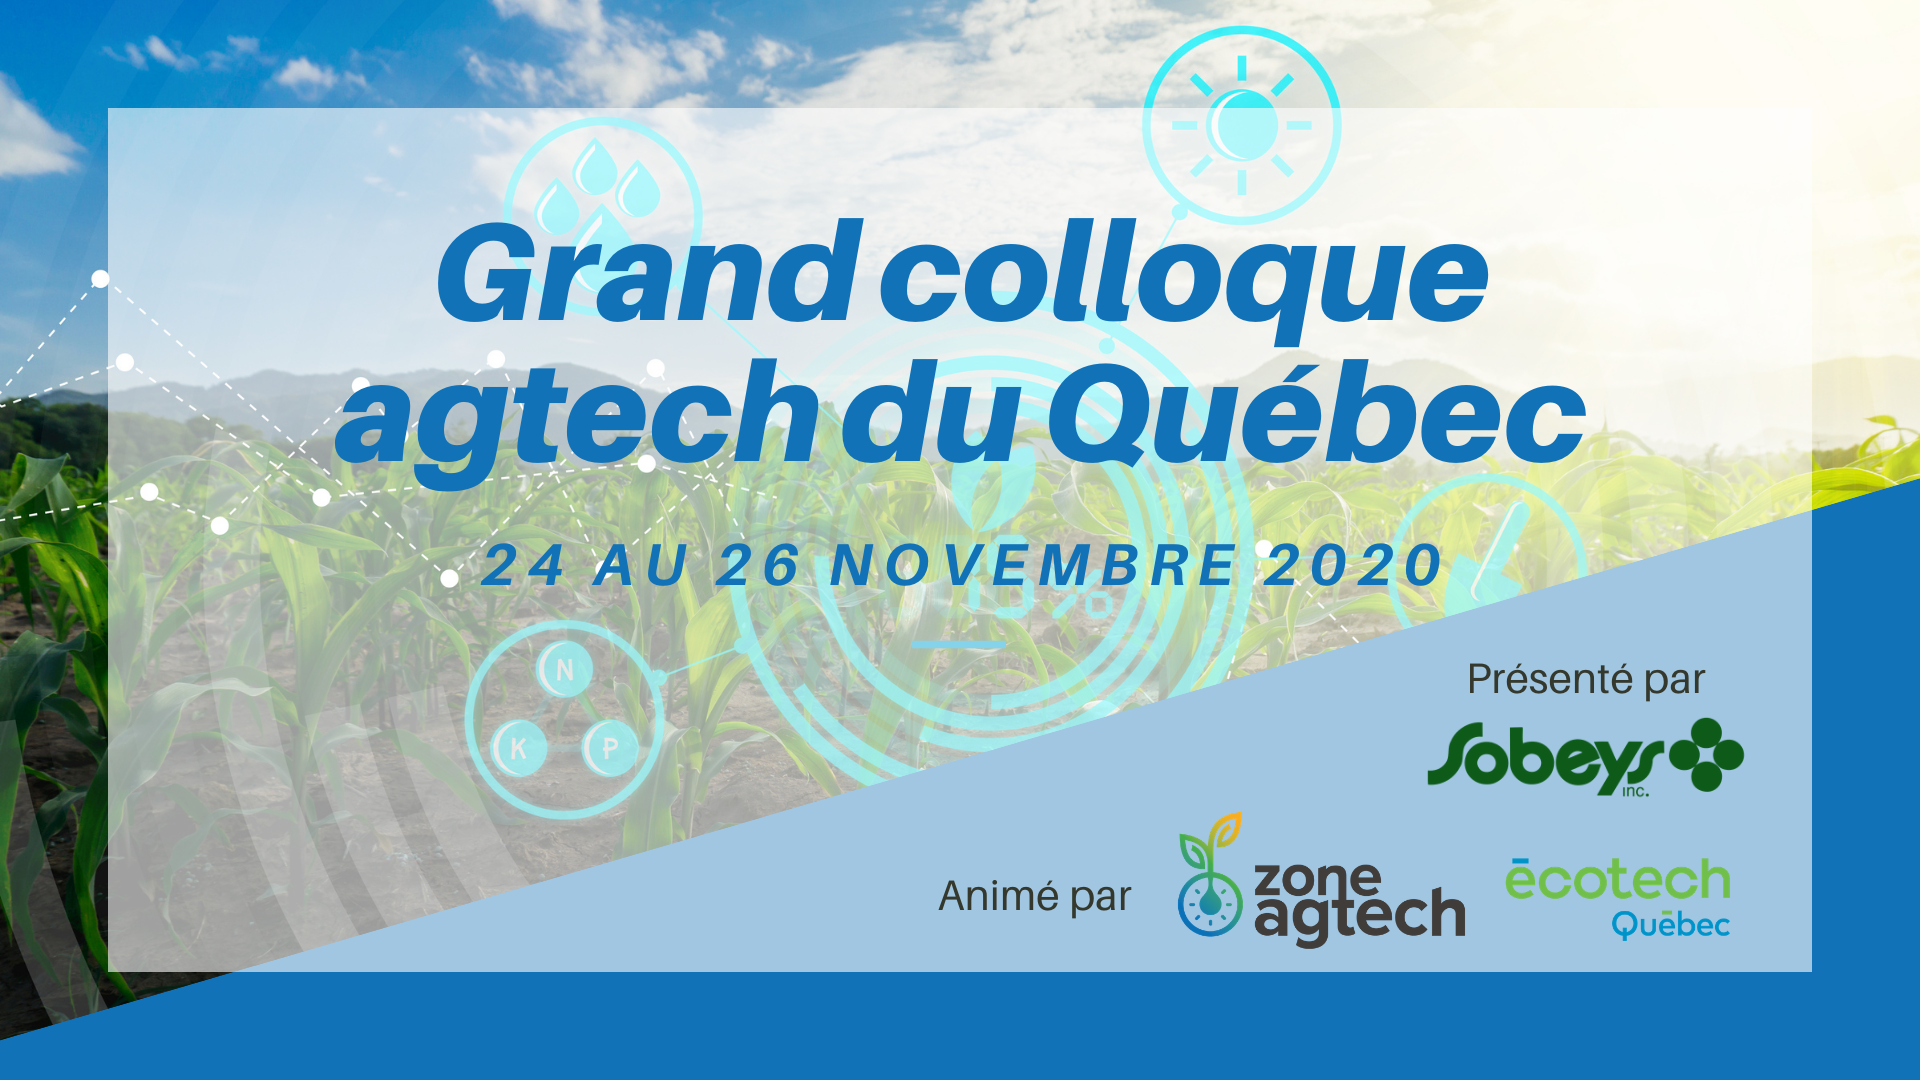 Grand colloque Agtech du Québec